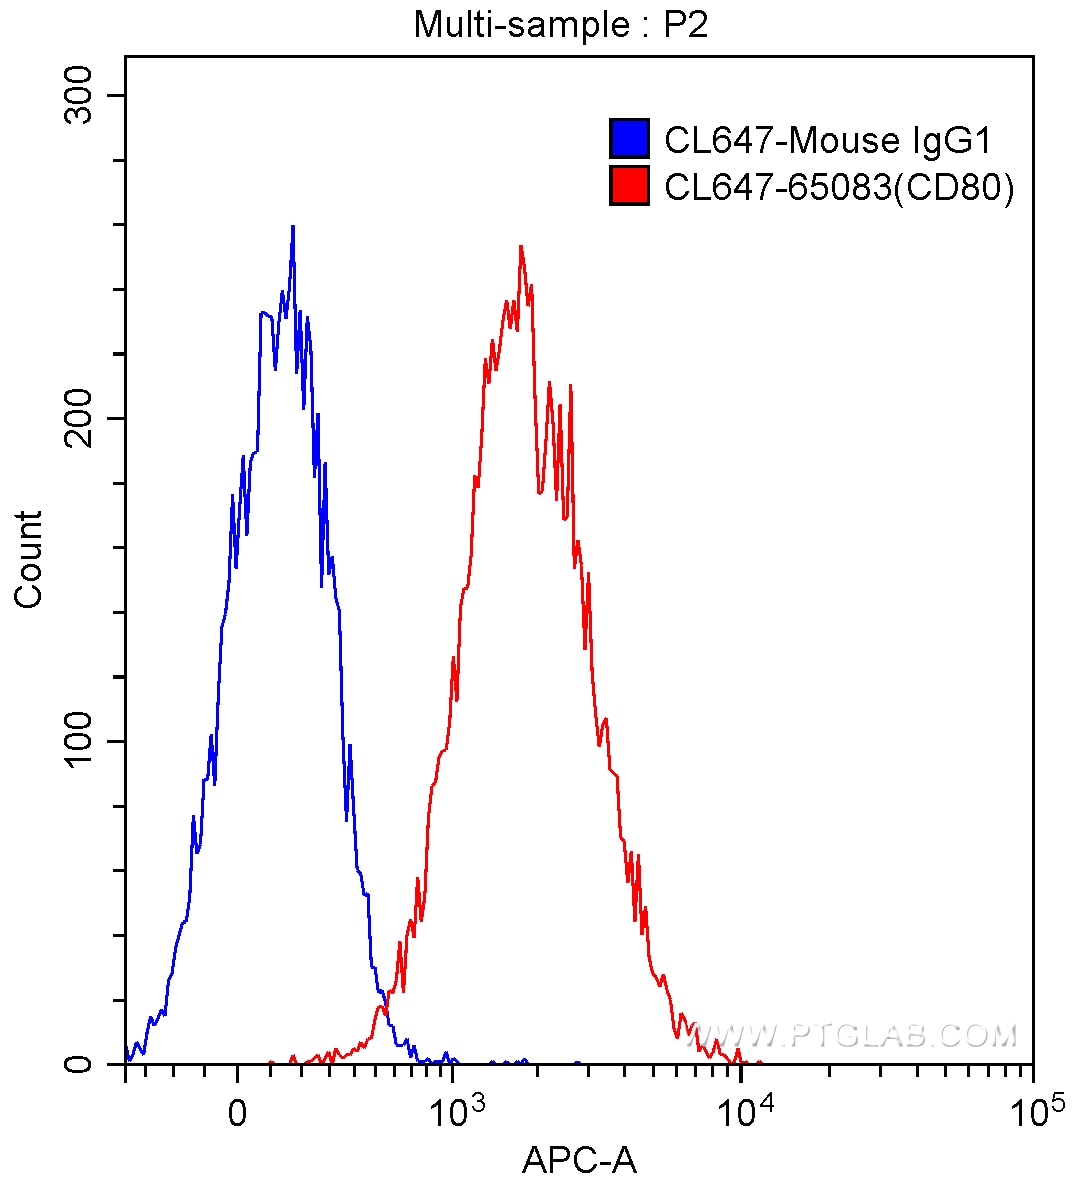 Flow cytometry (FC) experiment of Daudi cells using CoraLite® Plus 647 Anti-Human CD80 (B7-1) (2D10.4) (CL647-65083)